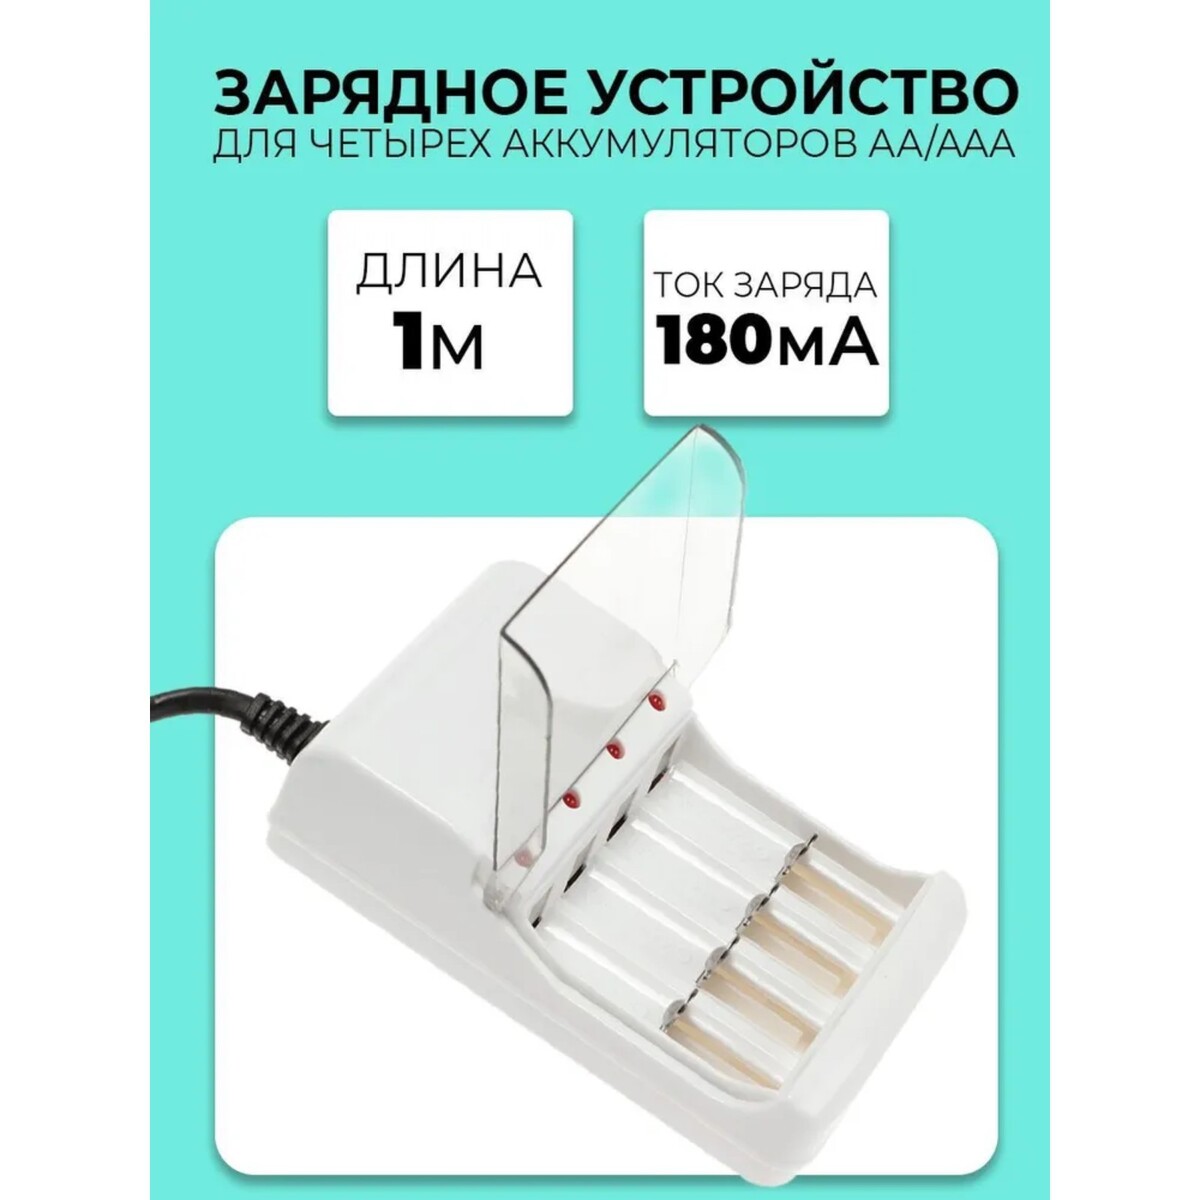 Зарядное устройство для четырех аккумуляторов аа или ааа chr-56, 1 м,ток заряда 180 ма,белое зарядное устройство gp e211 для аккумуляторов 2хaa aaa белый